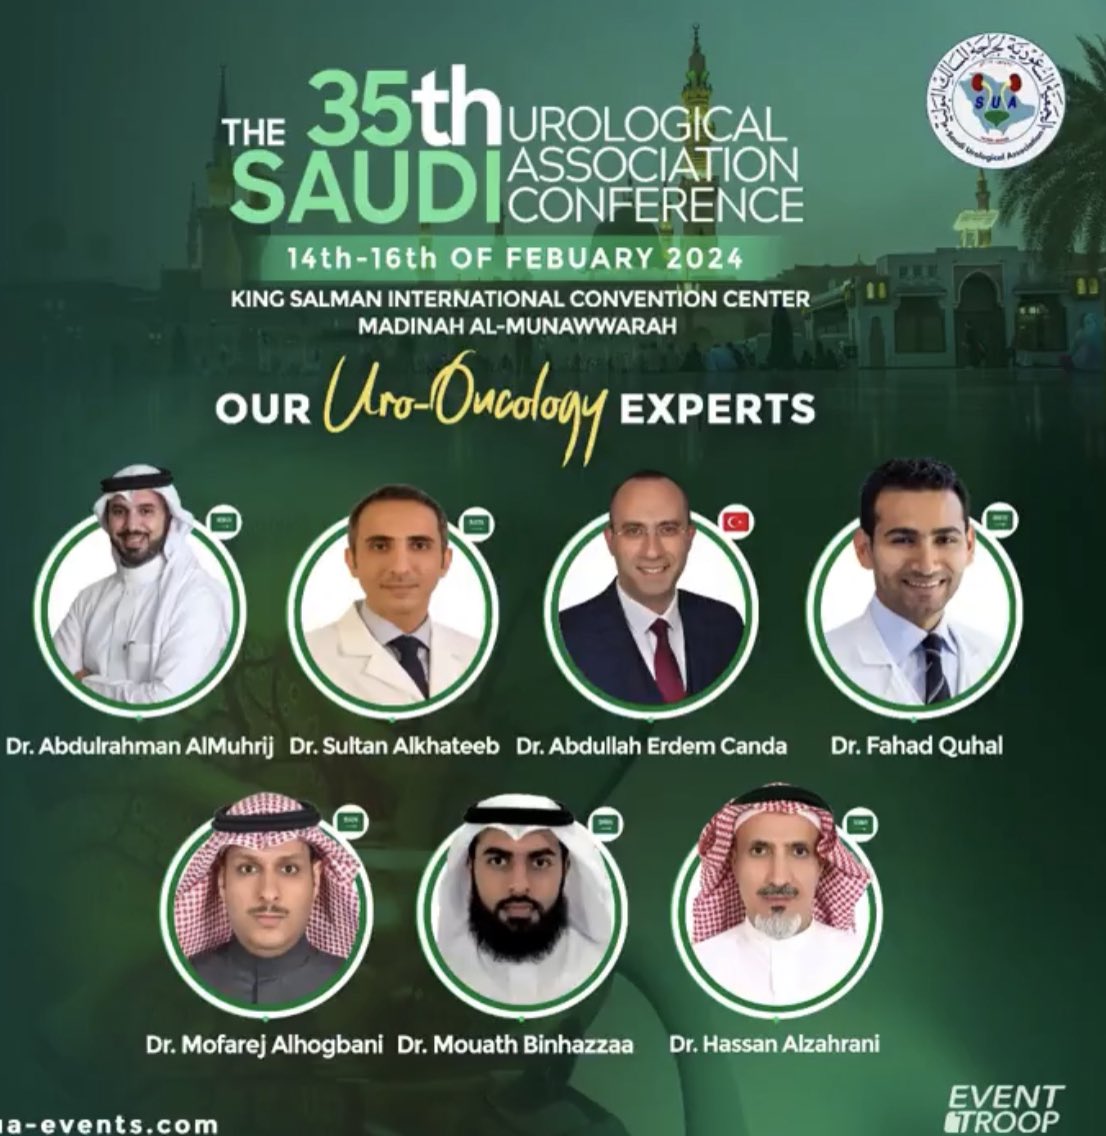 🛫 الى المدينة المنورة للمشاركة في مؤتمر الجمعية السعودية للمسالك البولية #sua35